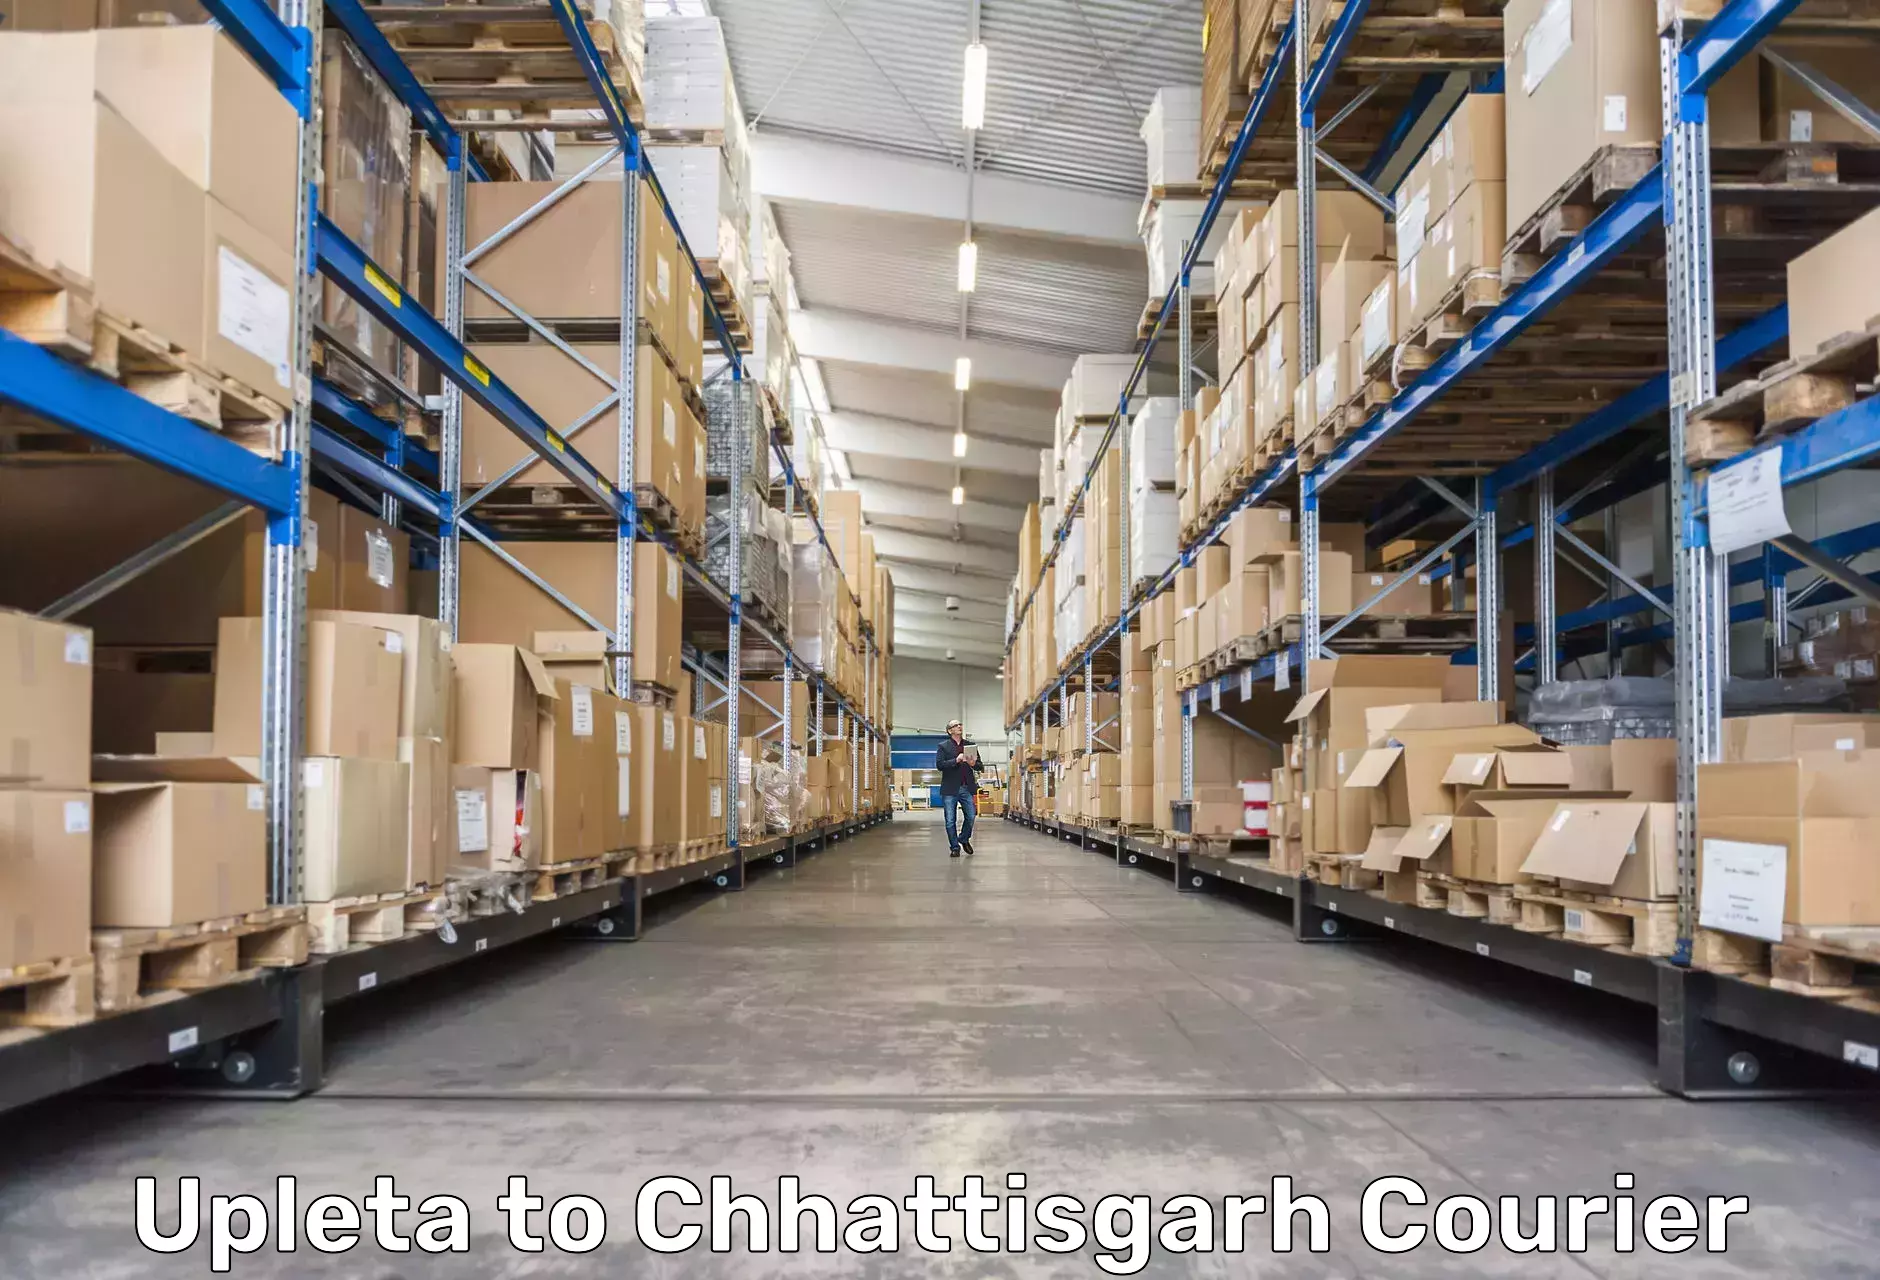 Premium delivery services Upleta to Chhattisgarh